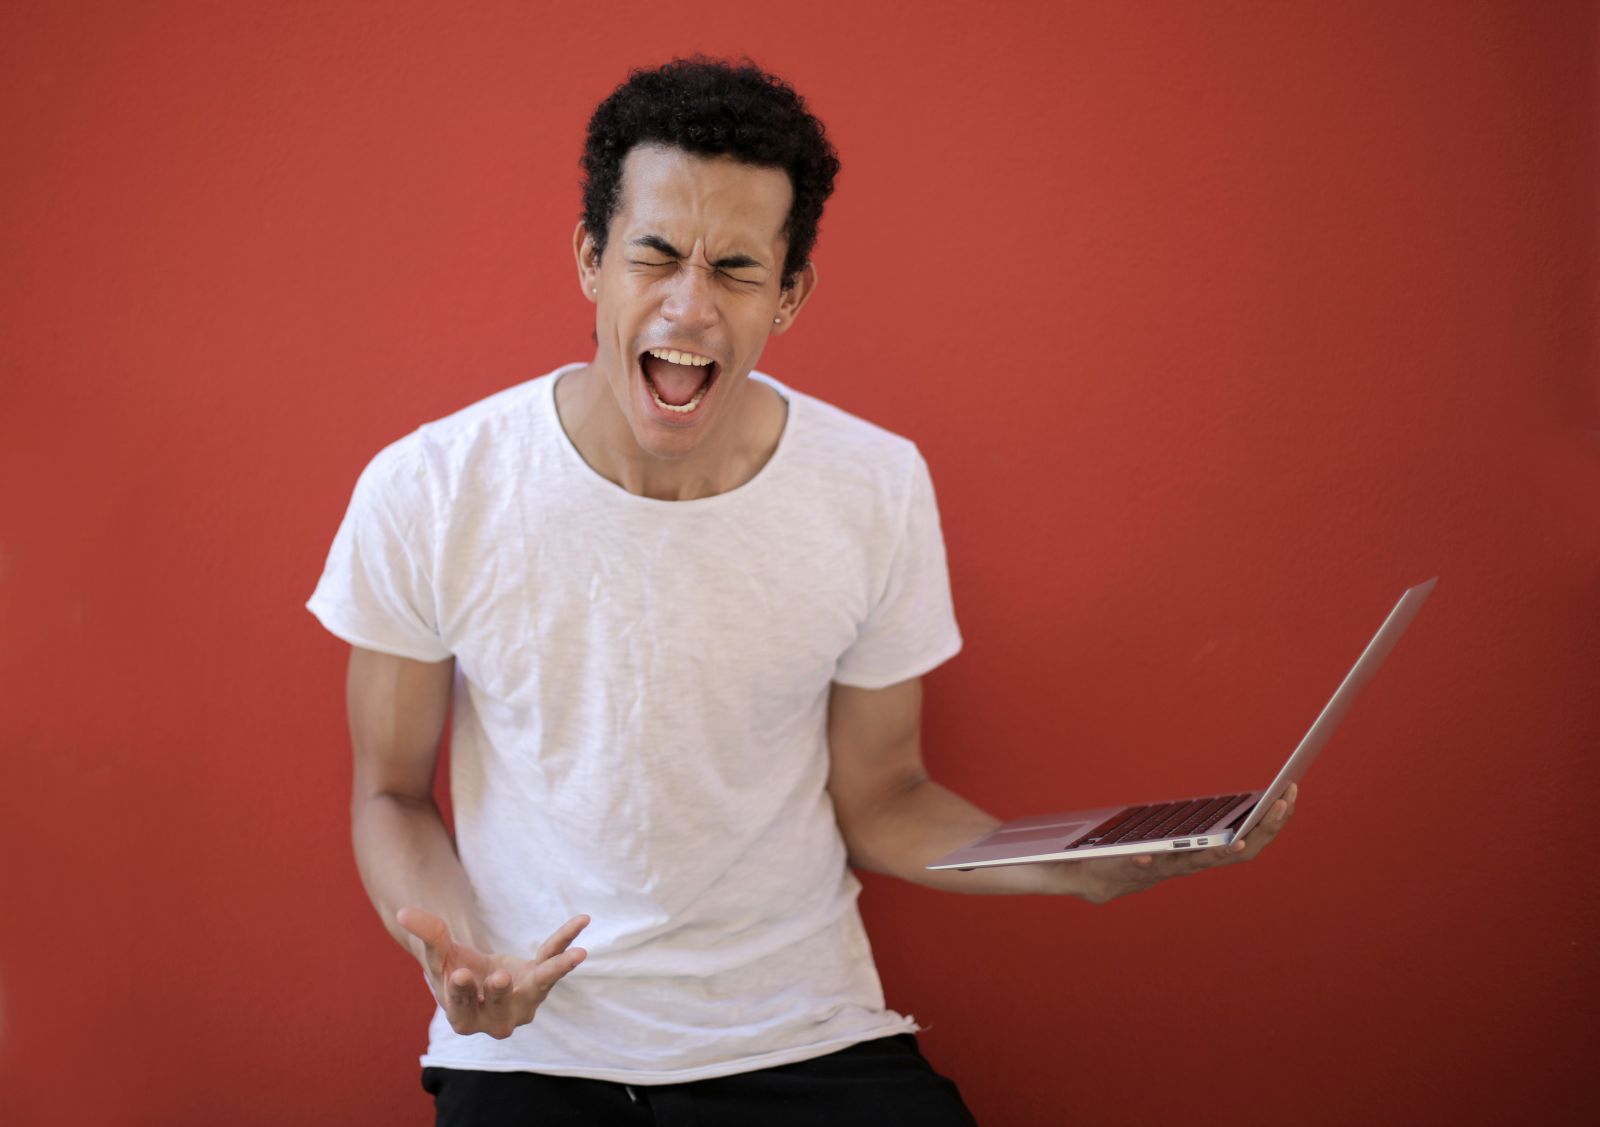 Homem segurando um laptop enquanto grita com expressão de raiva,